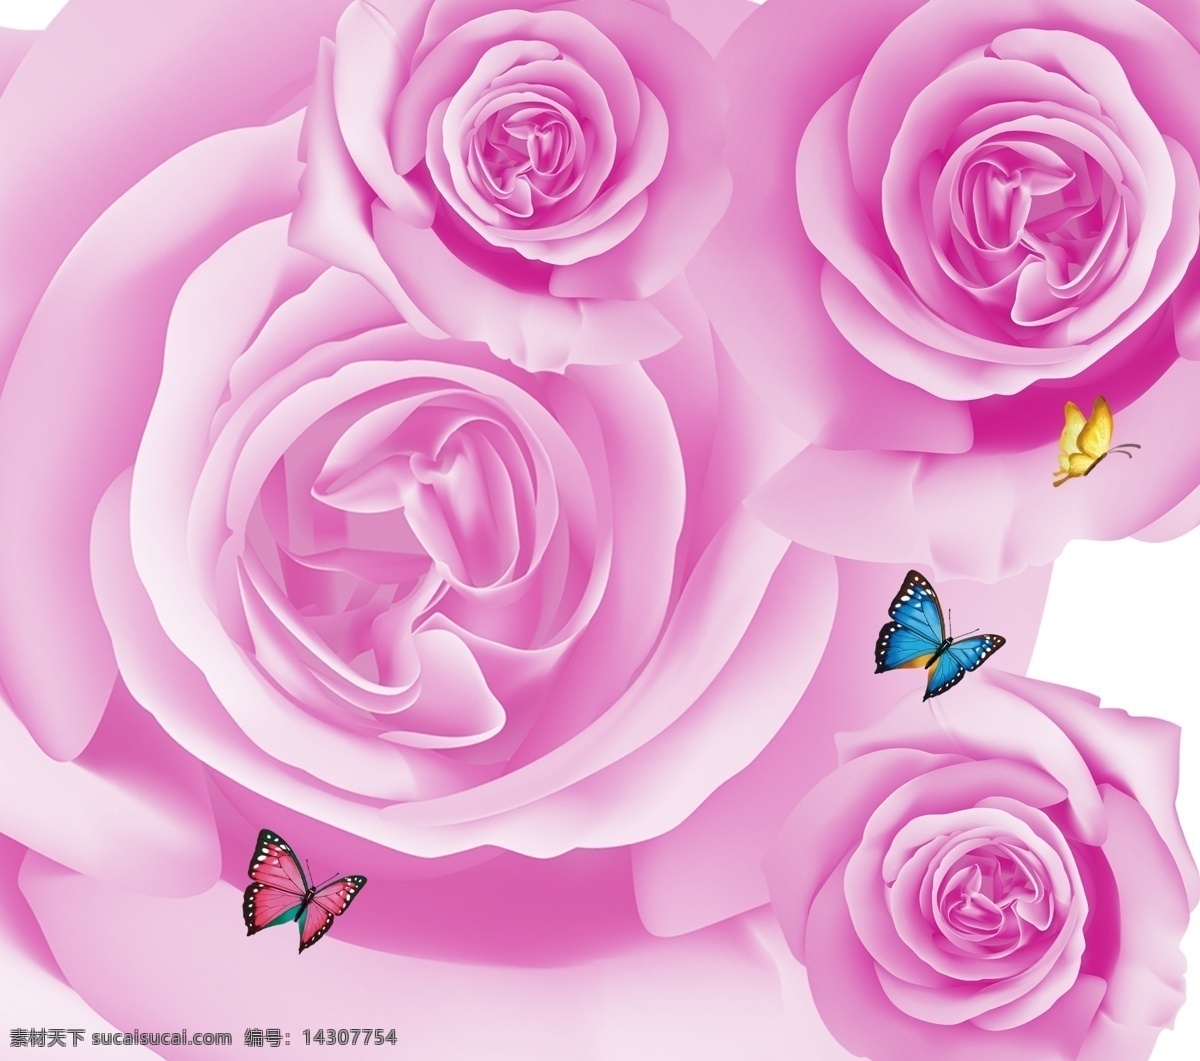 高清 梦幻 紫色 玫瑰花 唯美玫瑰 水珠玫瑰 玫瑰花素材 模板 花束 玫瑰花束 情人节 倒影 红色玫瑰 红色 诱惑 生物世界 分层